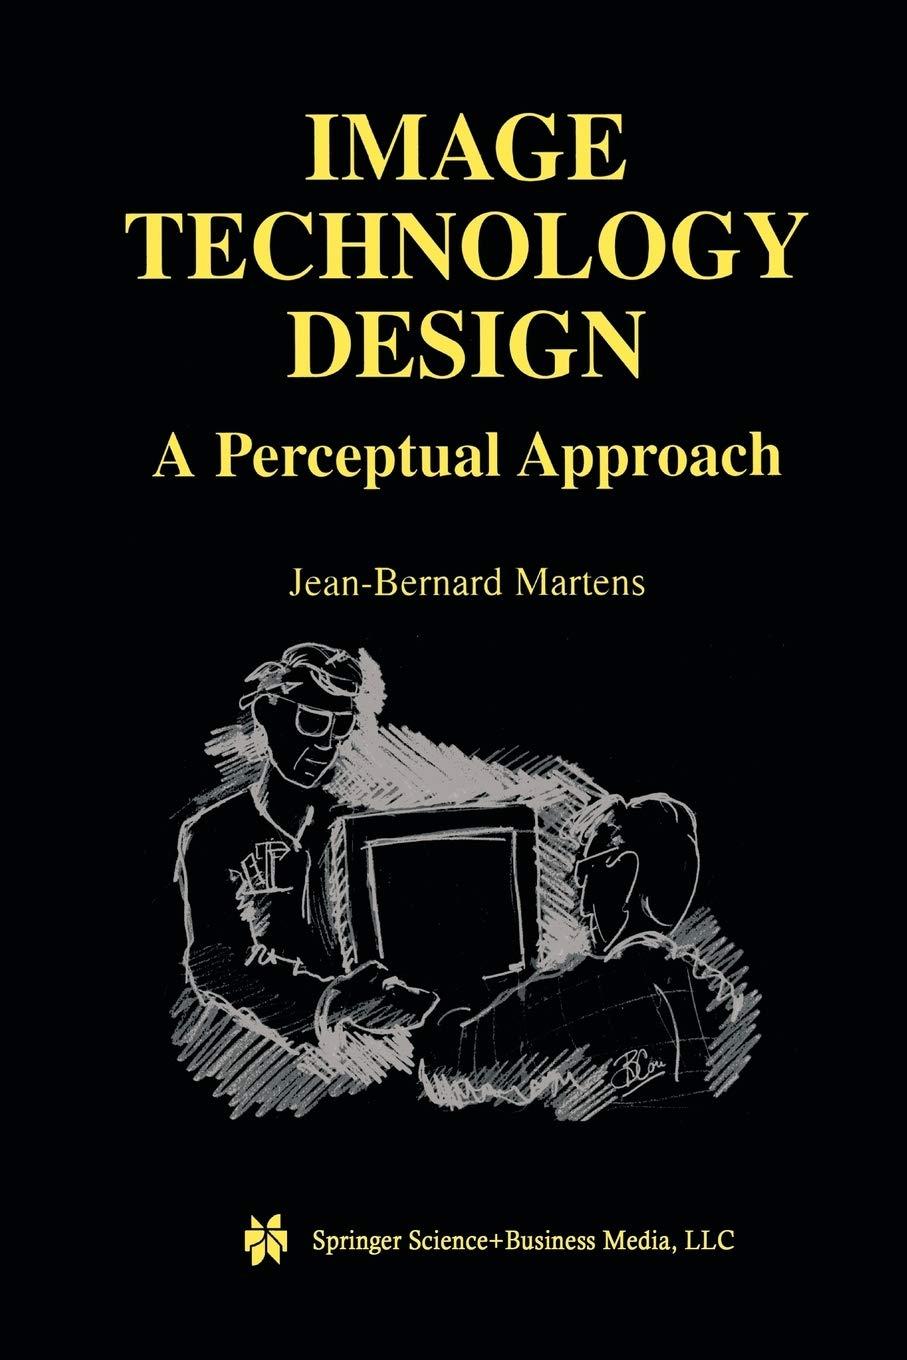 image technology design 2003 edition jean-bernard martens 1461350794, 978-1461350798